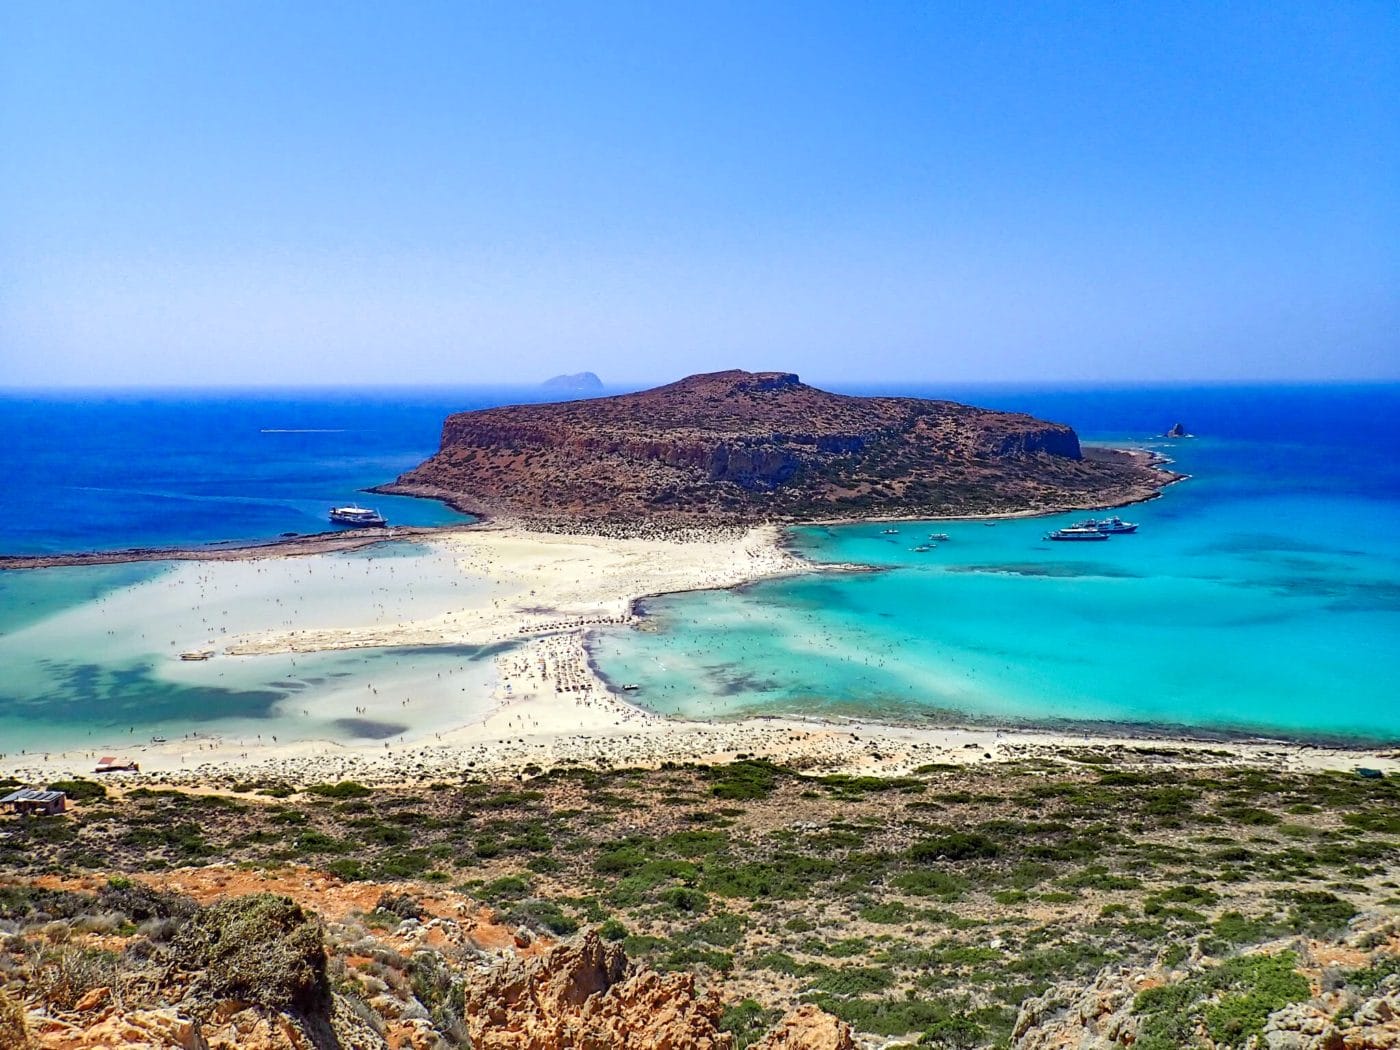 the balos lagoon in crete greece